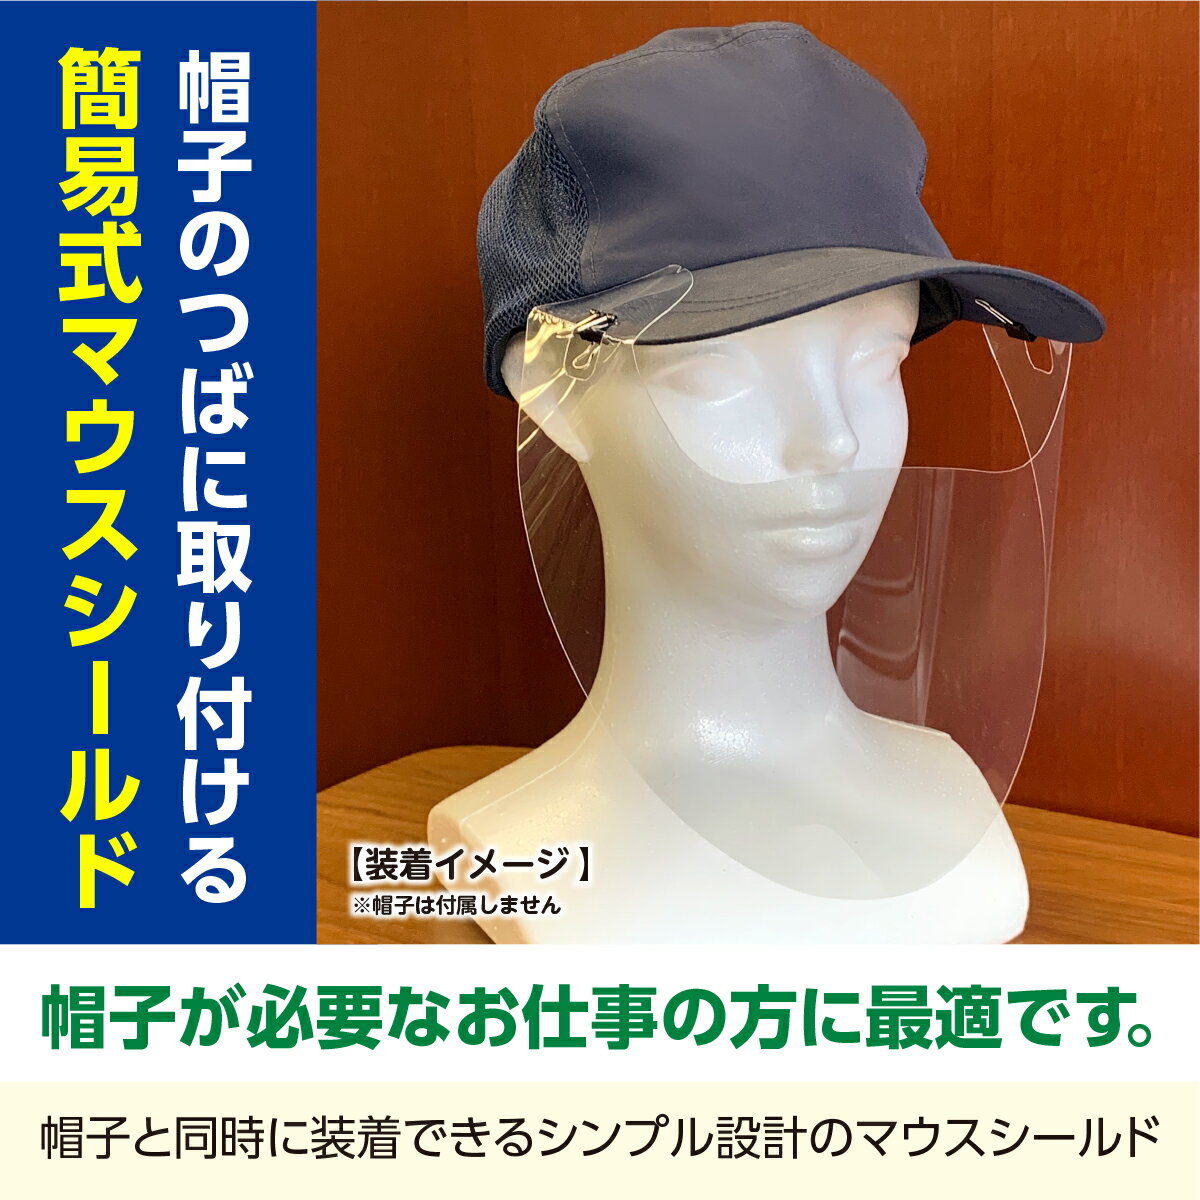 【あす楽】キャップ式 マウスシールド 10枚 日本製 自社工場 透明 マスク キャップ 帽子 感染対策 感染予防 飛沫対策 飛沫予防 キャップタイプ 目開き フェイスシールド プロテガットシリーズ 2